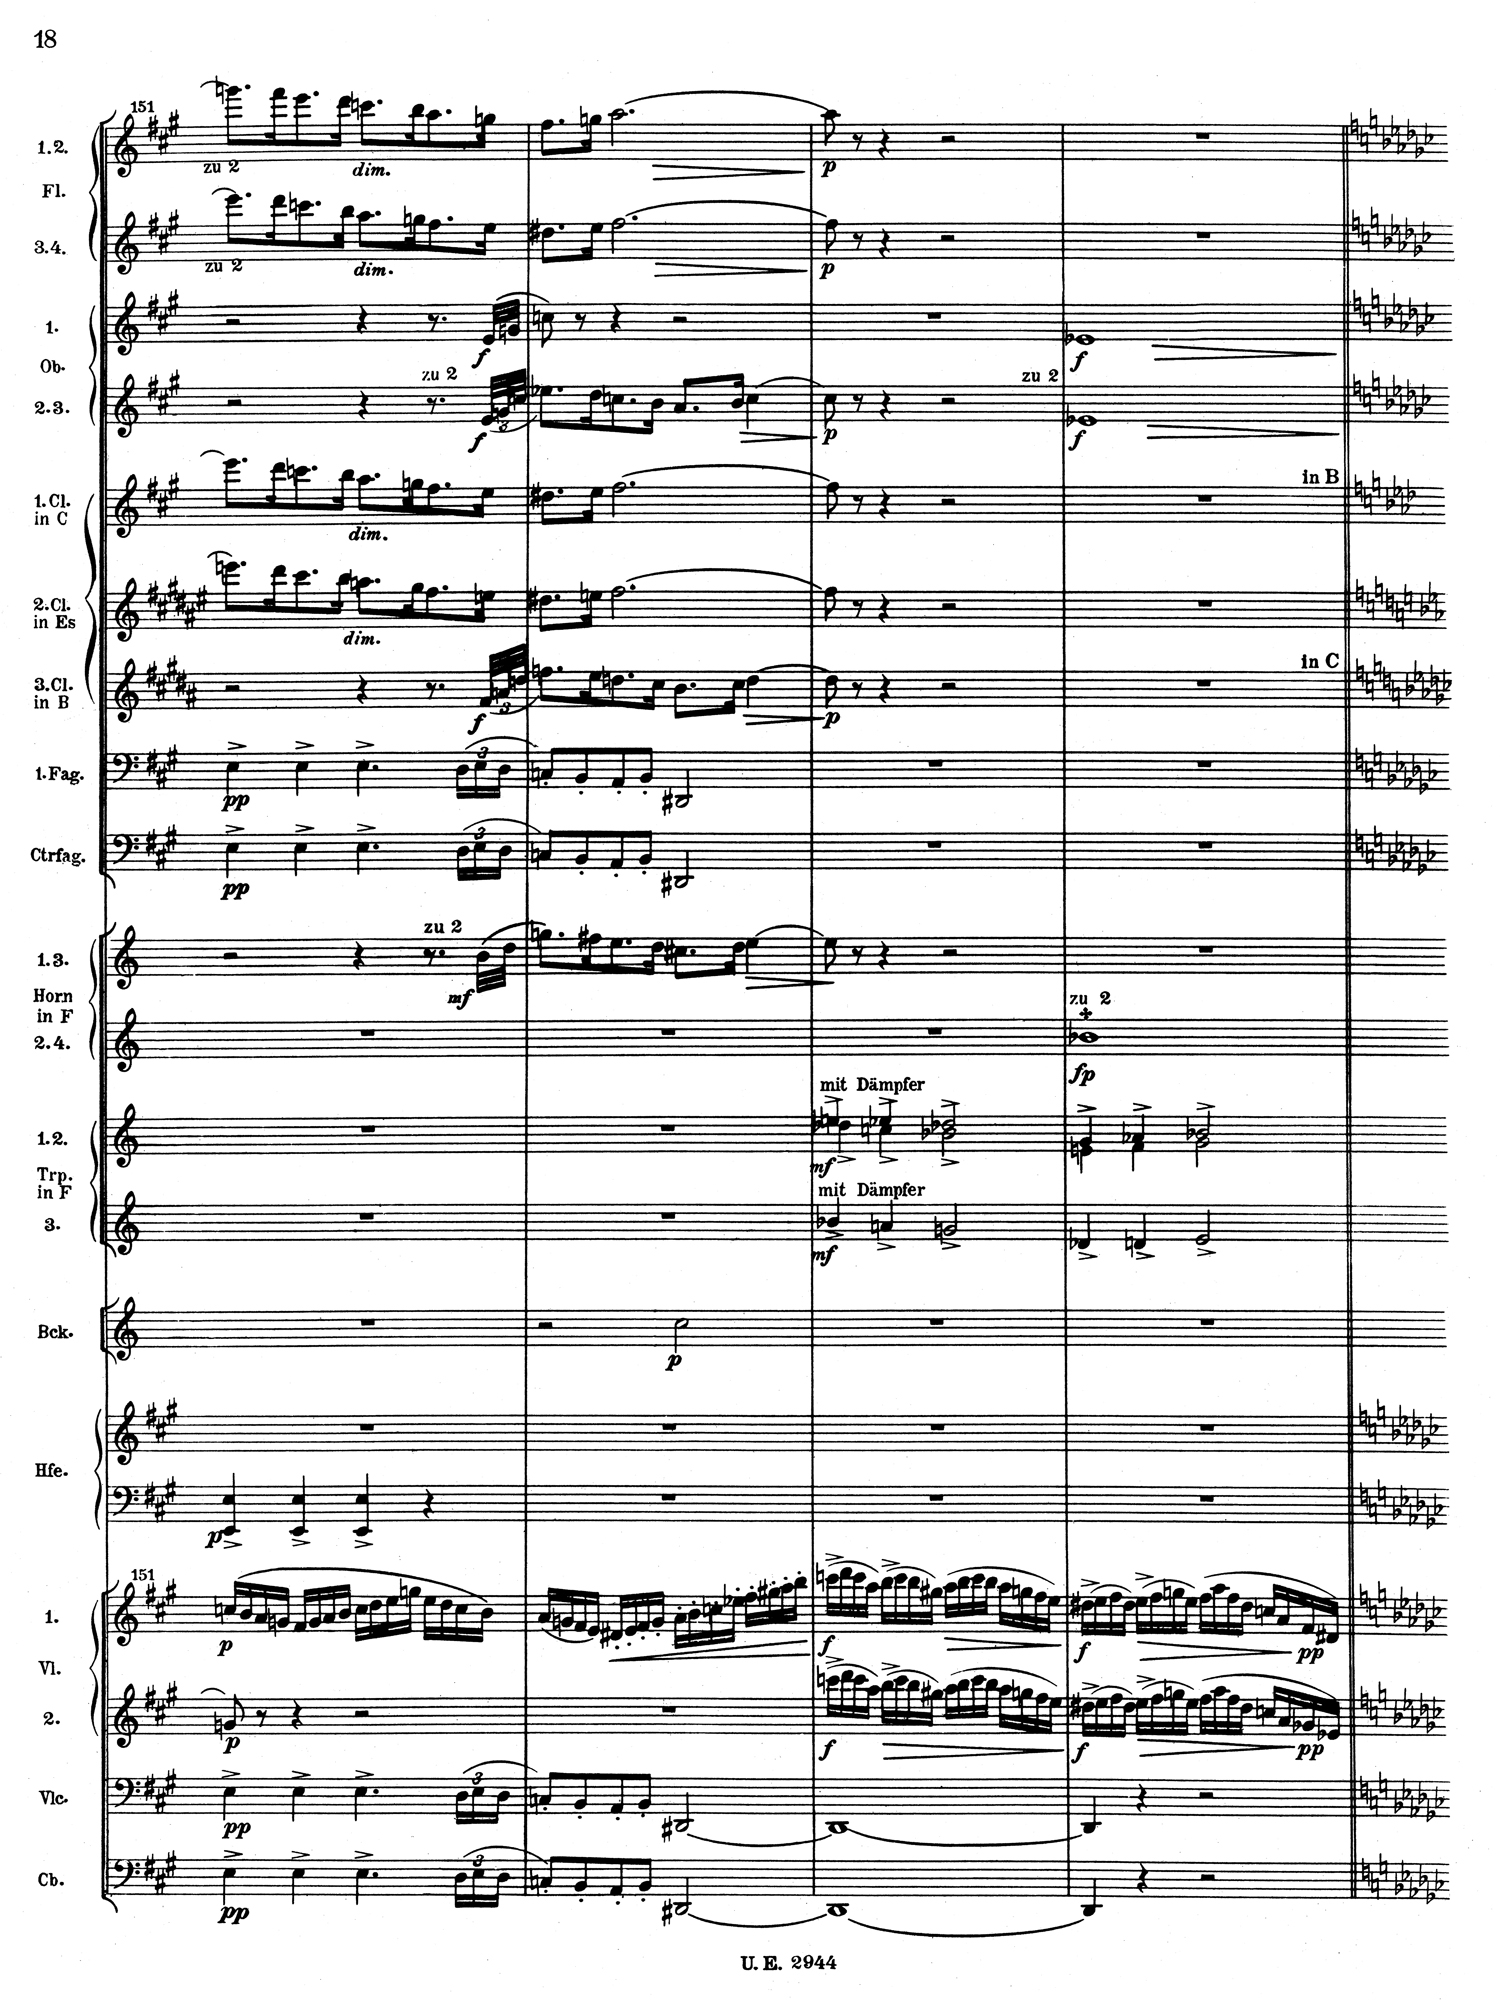 Mahler 4 Score 2.jpg